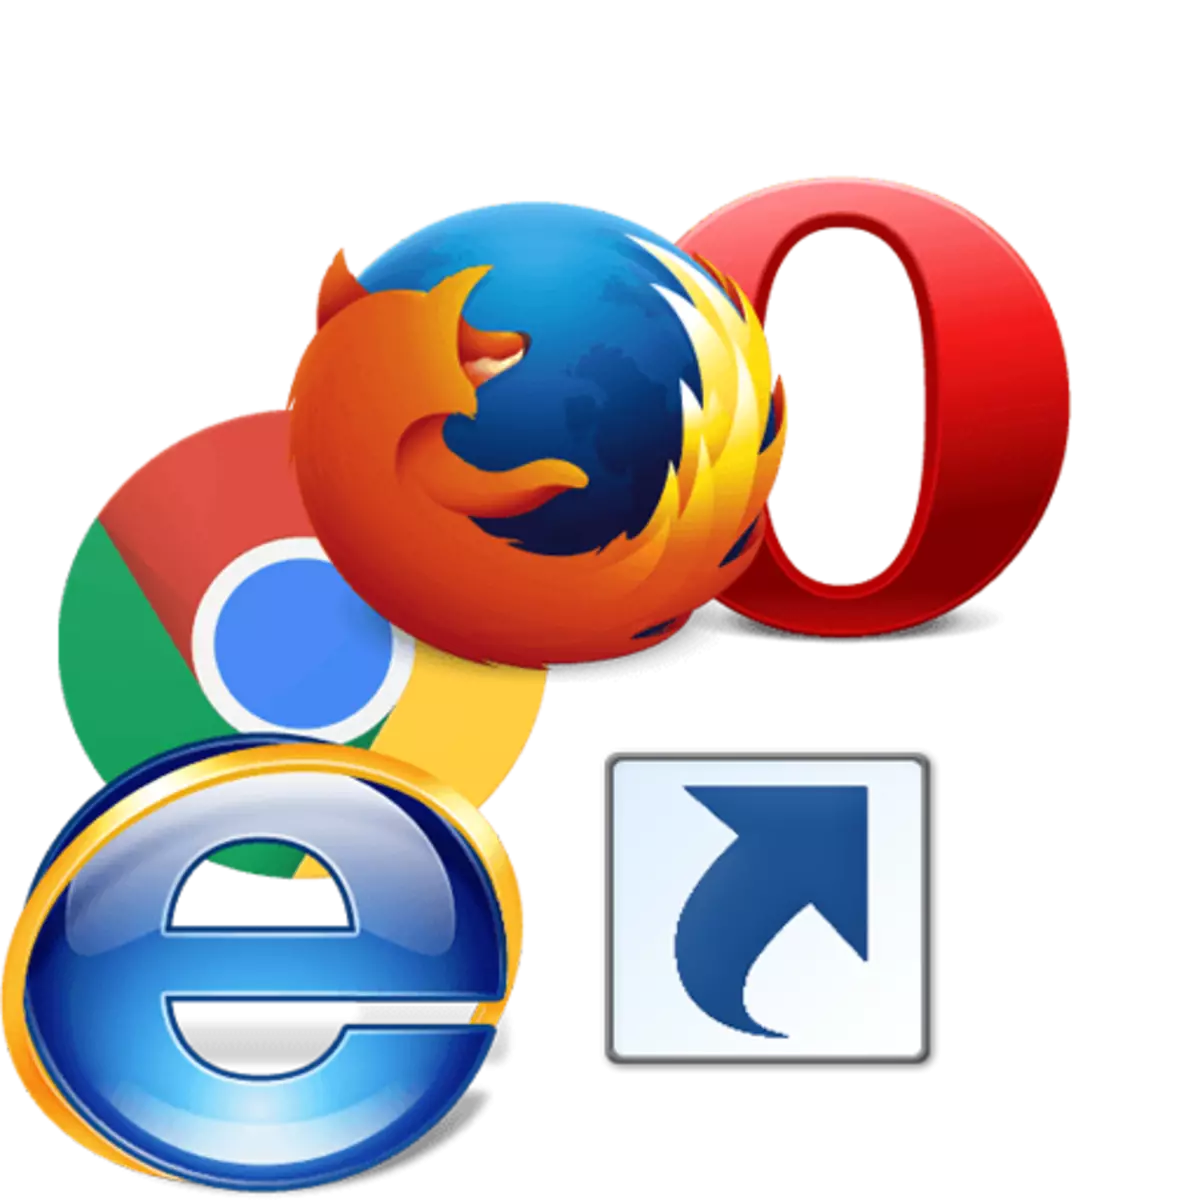 Значок браузера. Логотипы браузеров. Ярлыки браузеров. Значок браузера на компьютере. Создать ярлык браузера